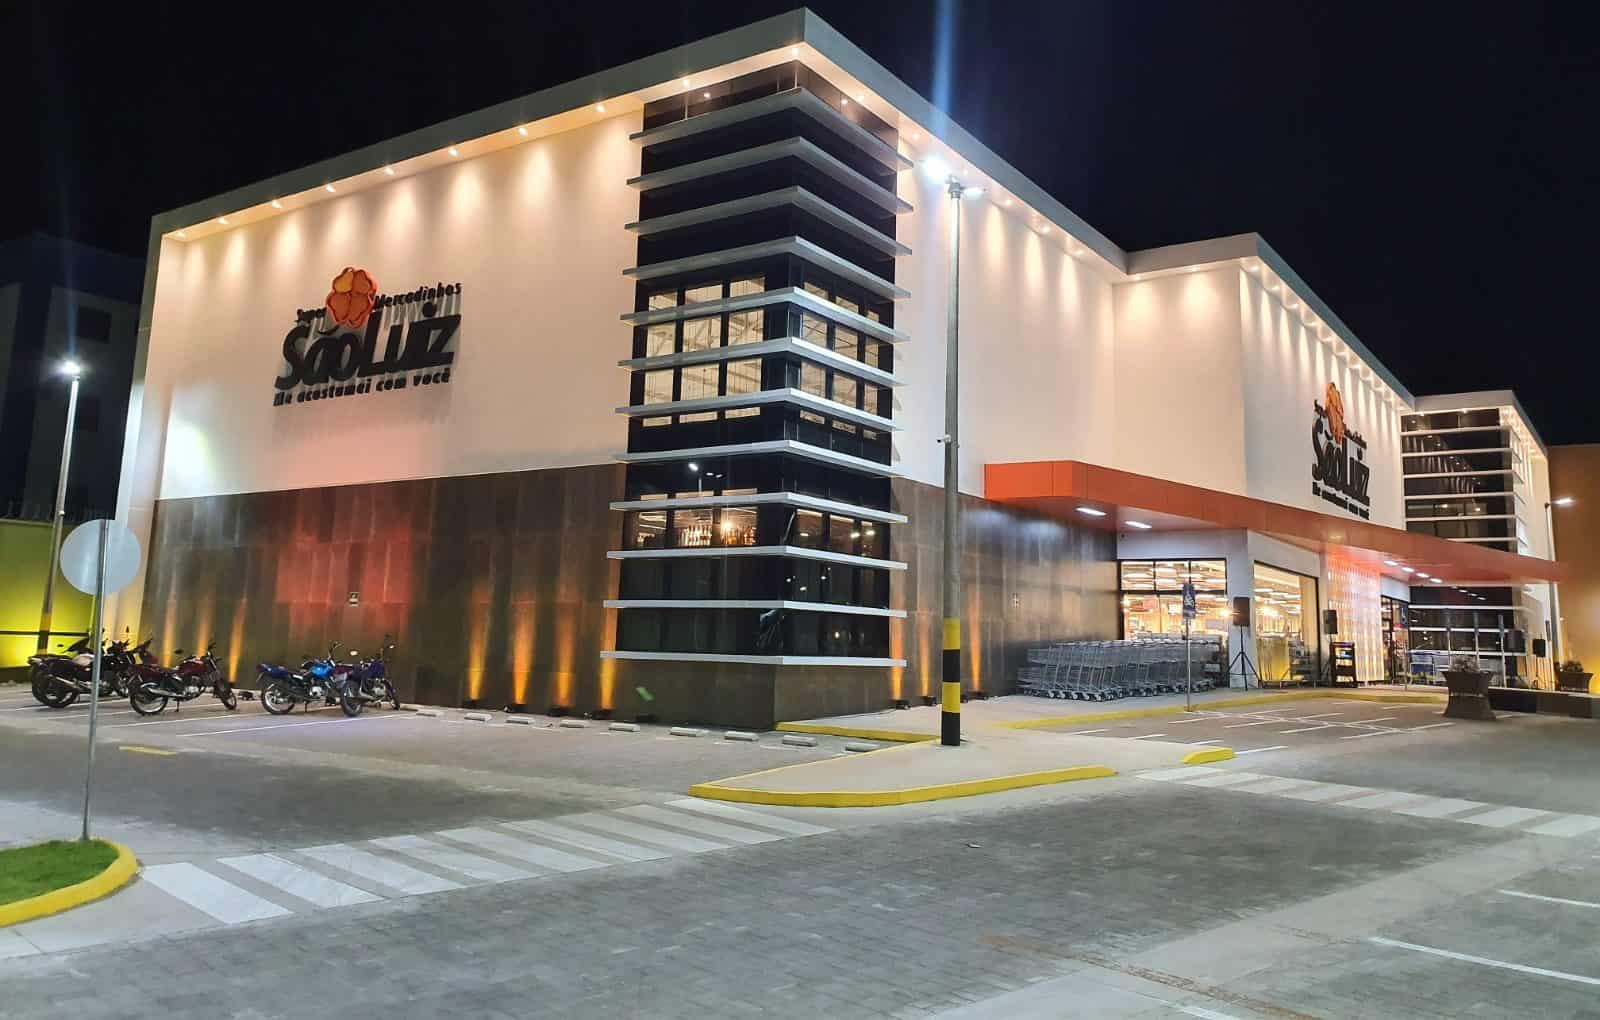 No recente ranking da Abras, o São Luiz figura como a segunda maior rede supermercadista do Ceará. (Foto: Divulgação)